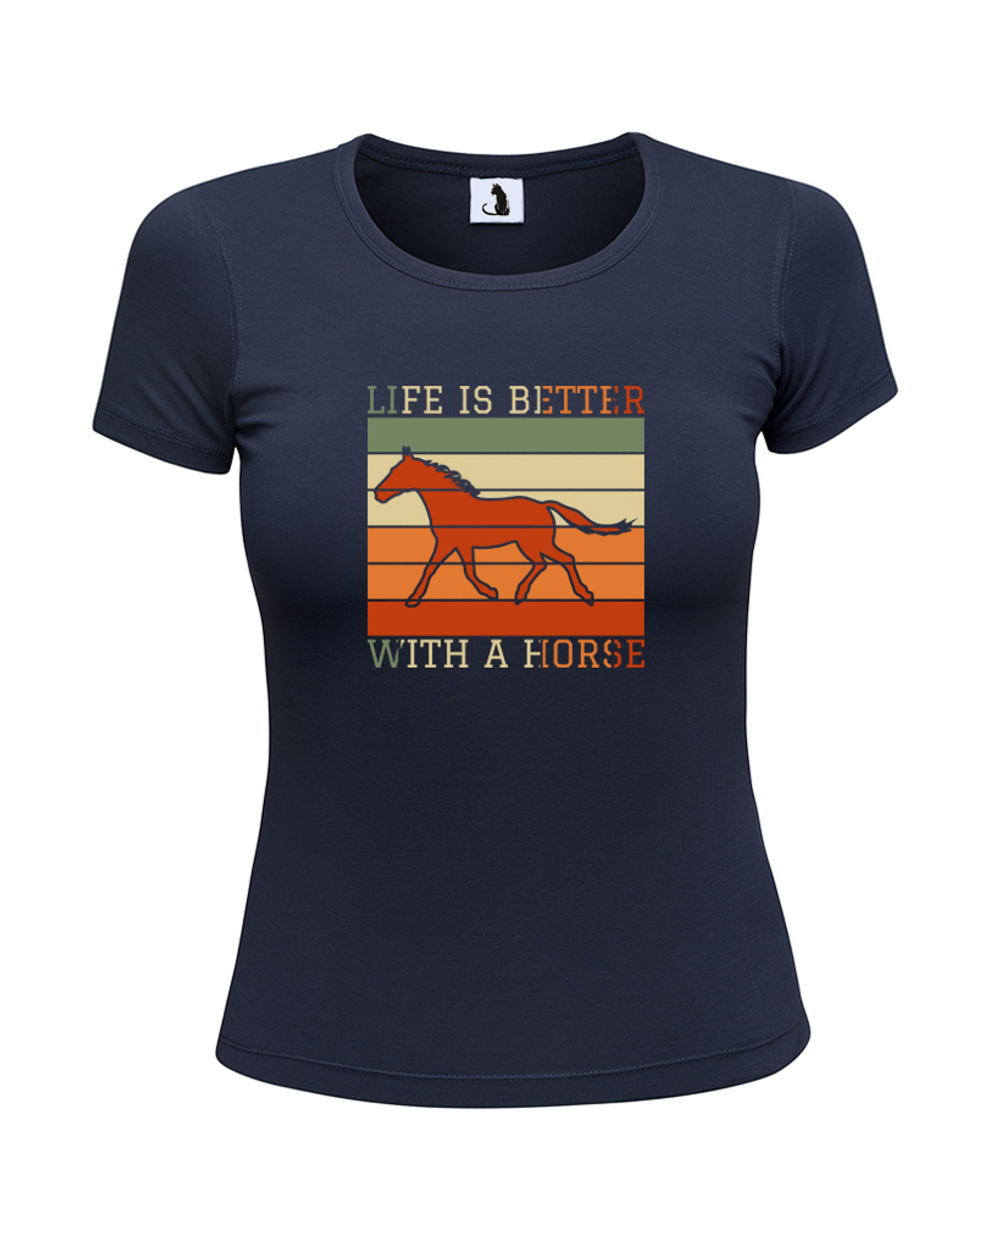 Футболка Life is better with a horse женская приталенная темно-синяя